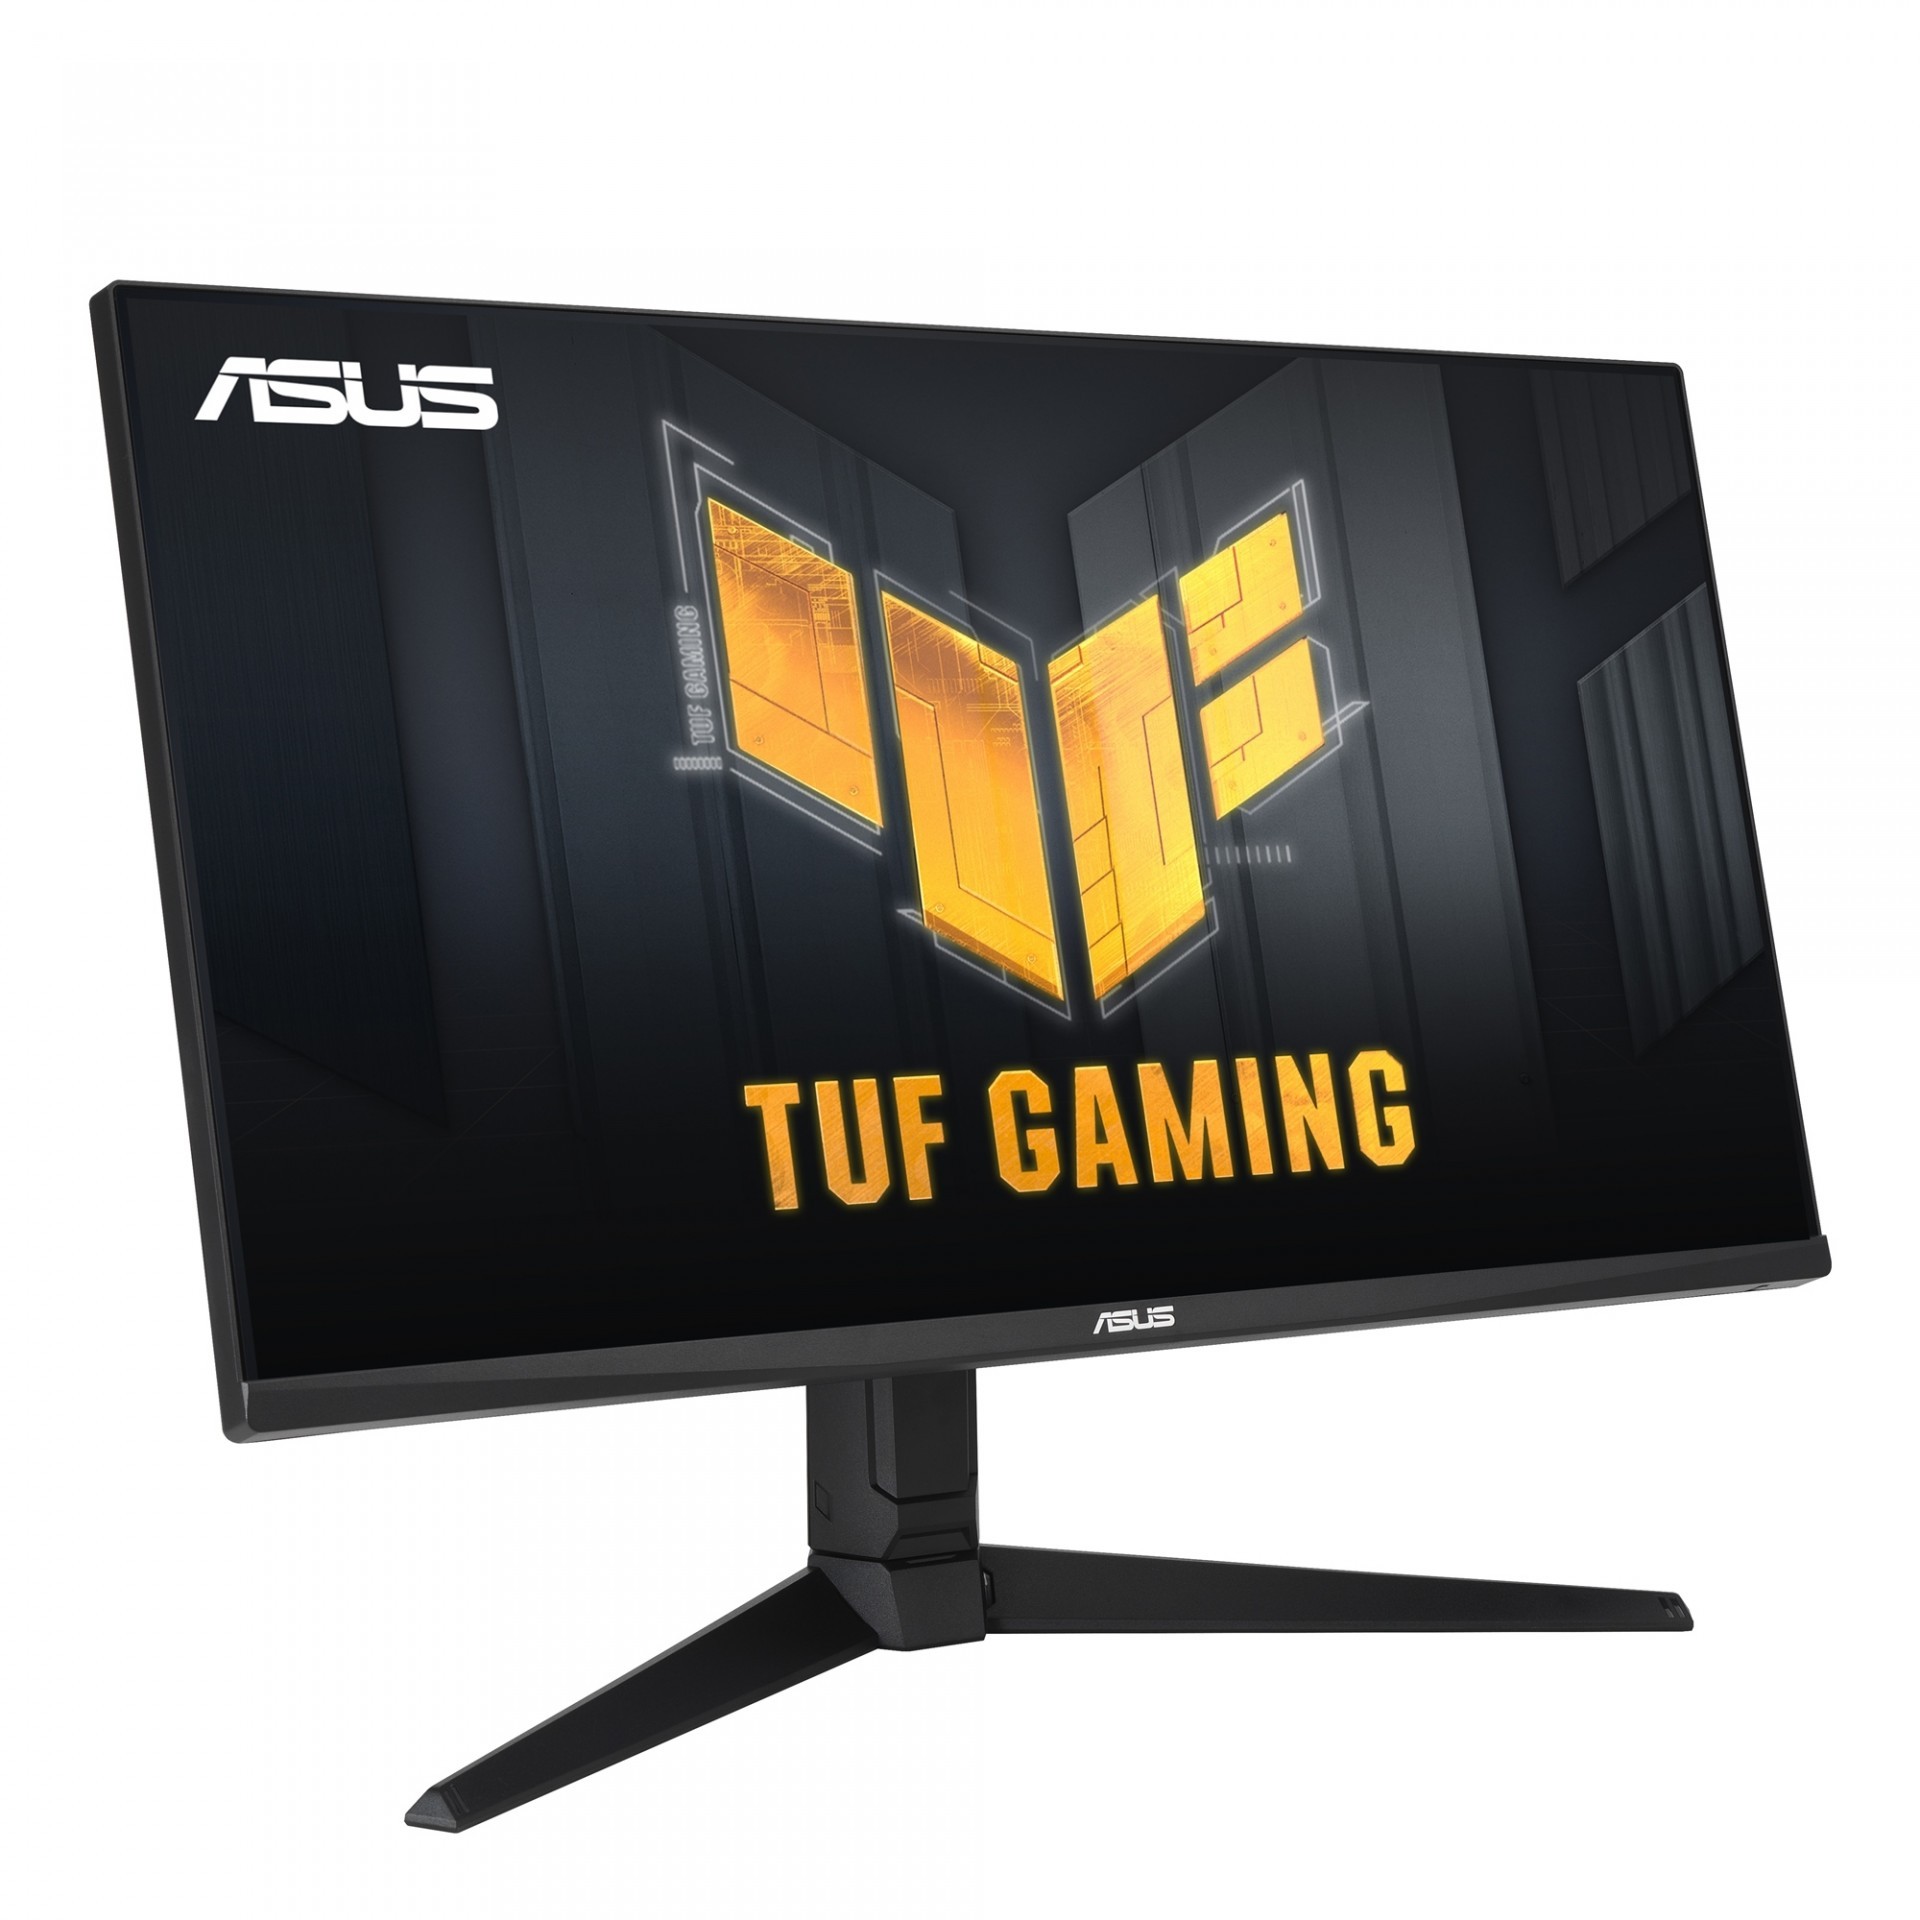 华硕 TUF Gaming VG28UQL1A 电竞萤幕上市